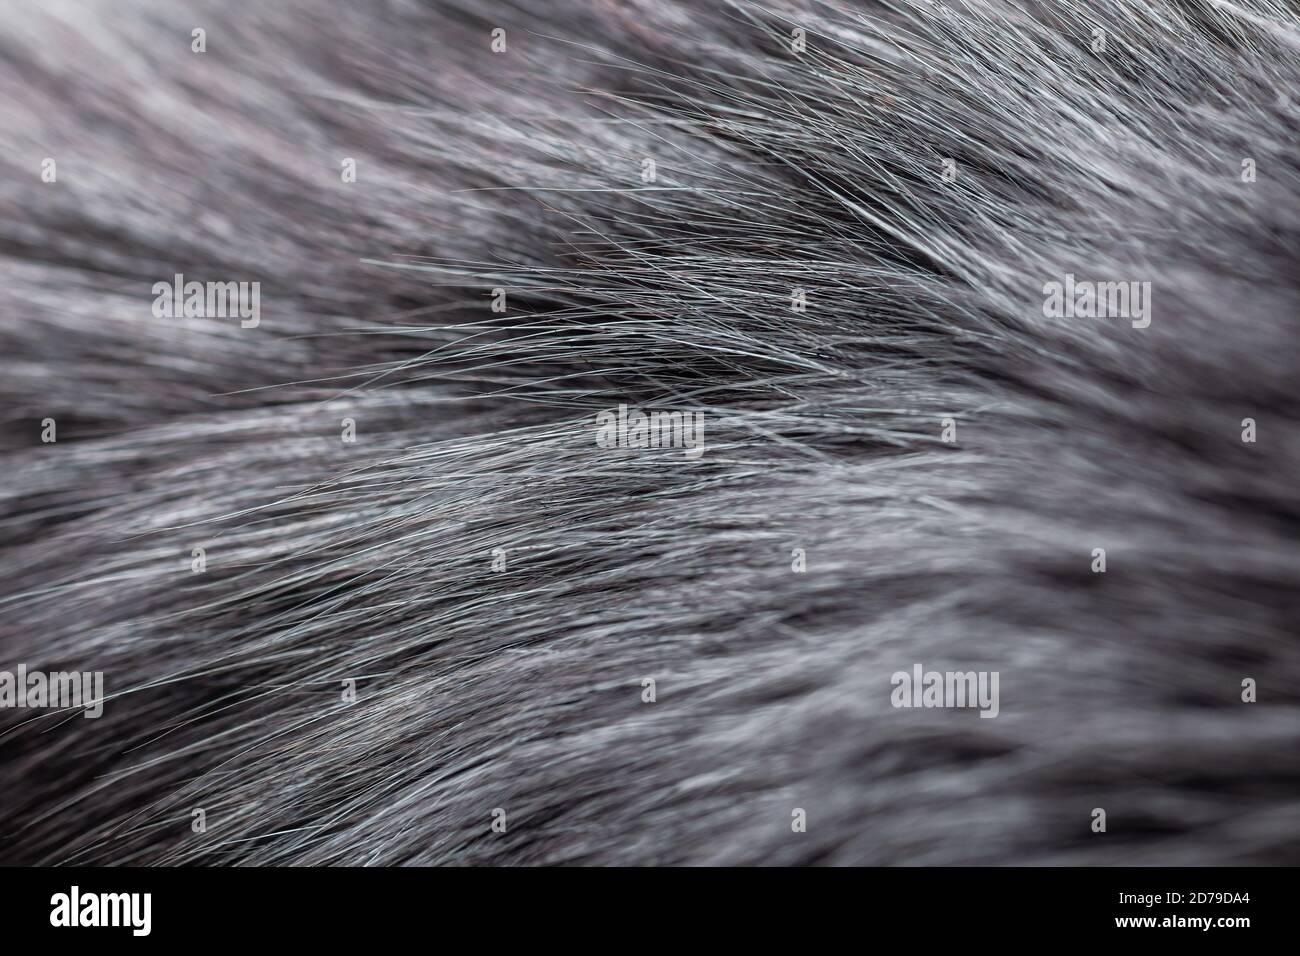 grey fur close-up Stock Photo